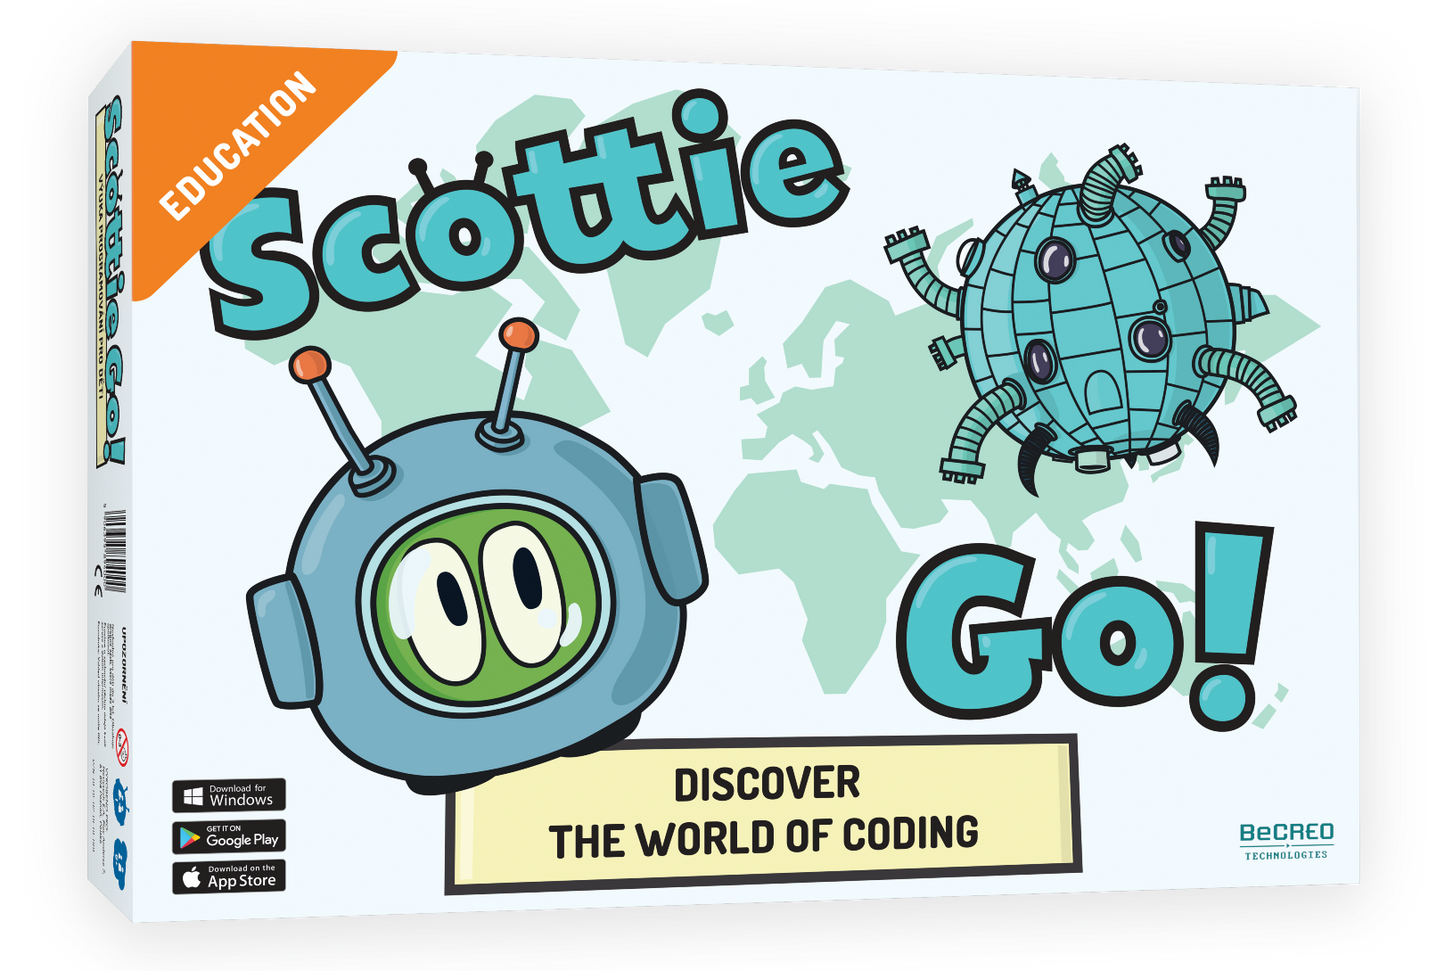 Scottie Go! EDU (age 6-15)